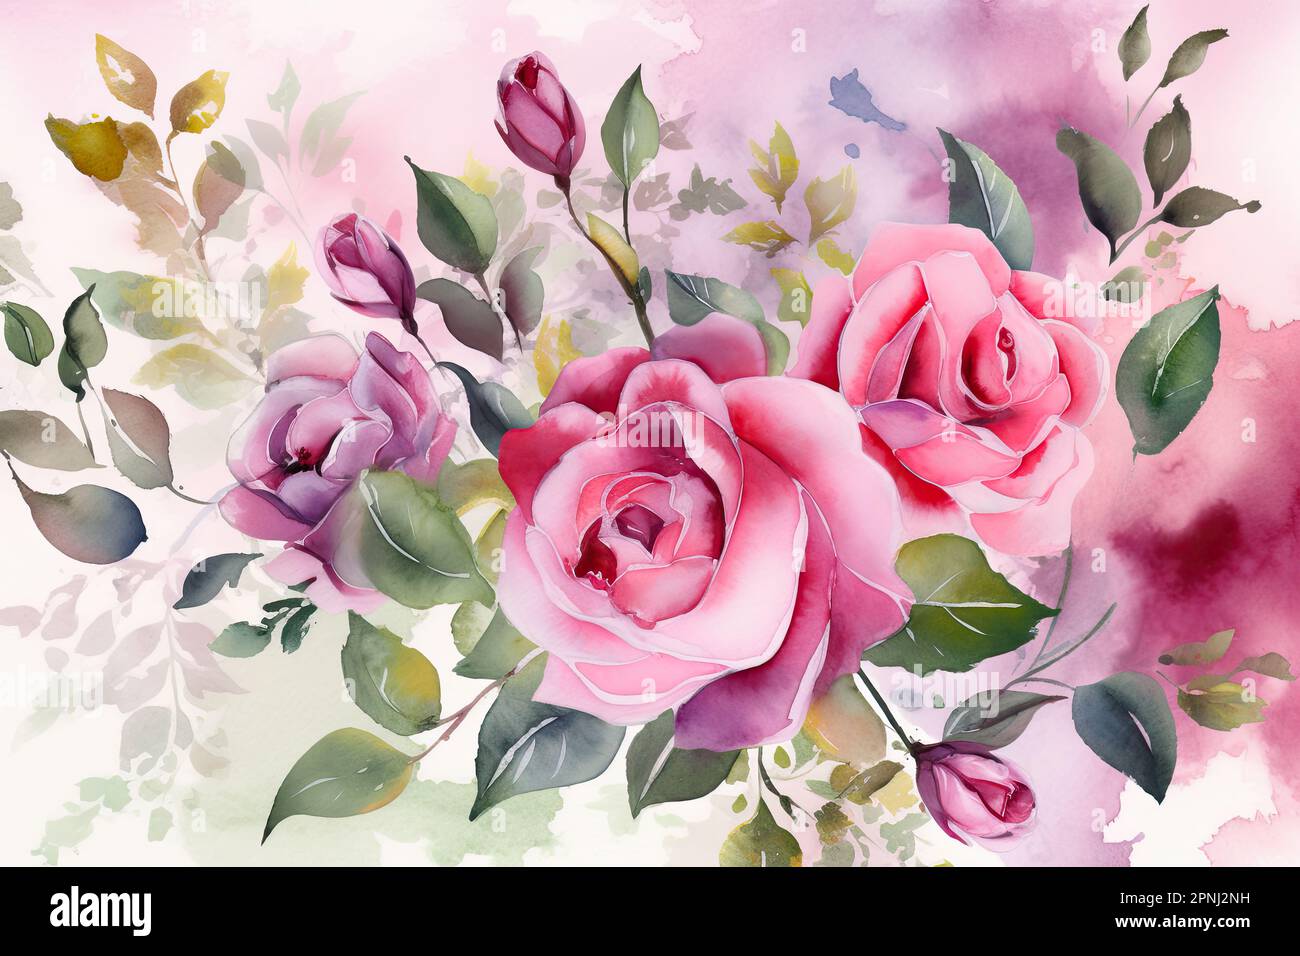 Mit Aquarellen erschaffen Sie eine farbenfrohe und lebendige Szene aus pinkfarbenen Rosenblüten mit komplexen Details und sanften Waschungen gegen eine saubere und schlichte Note Stockfoto